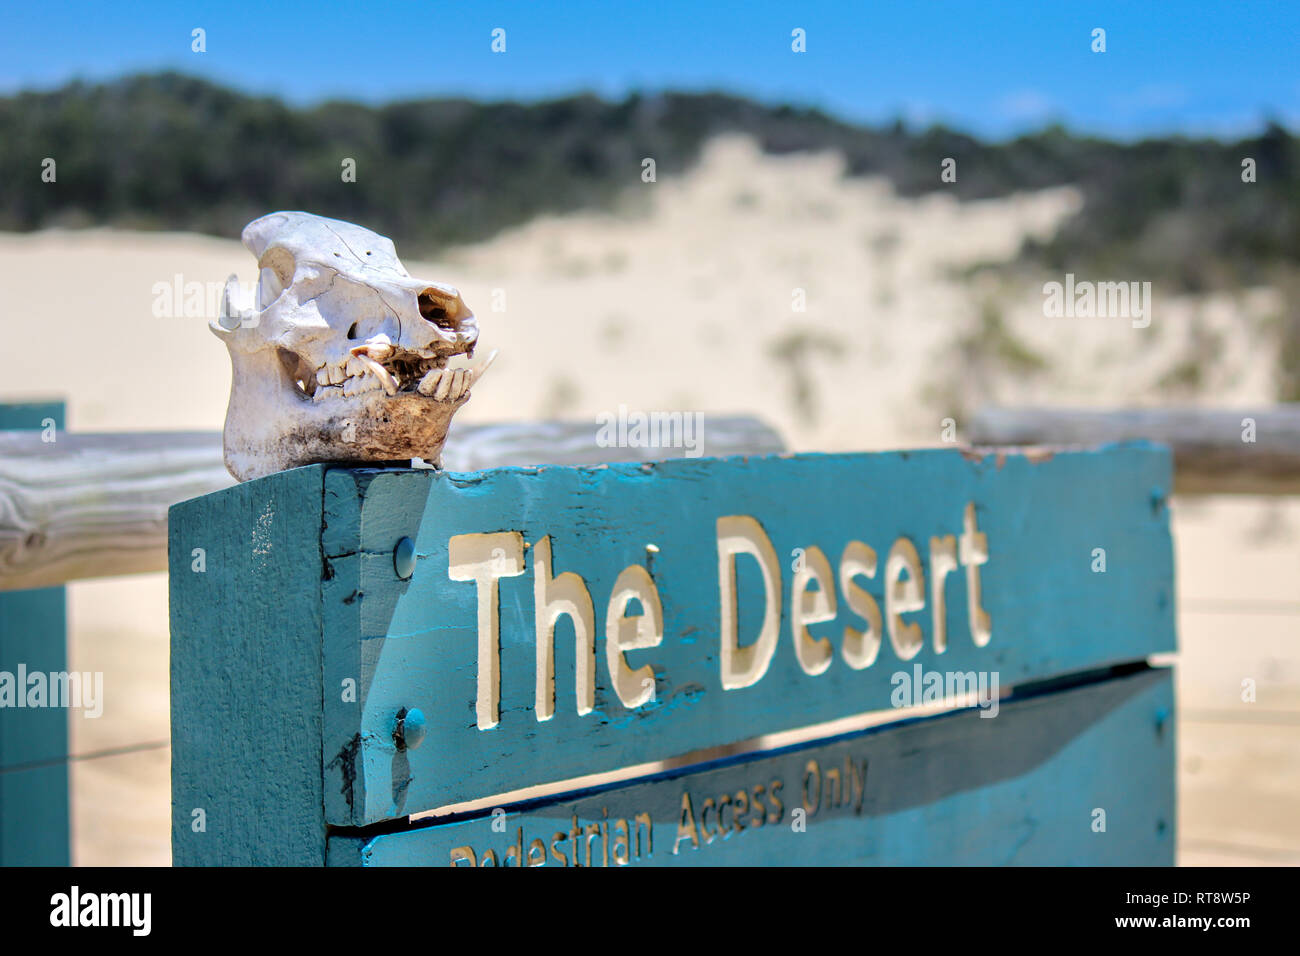 the desert sign on sand island fraser island australia adventure travel backpacker Stock Photo